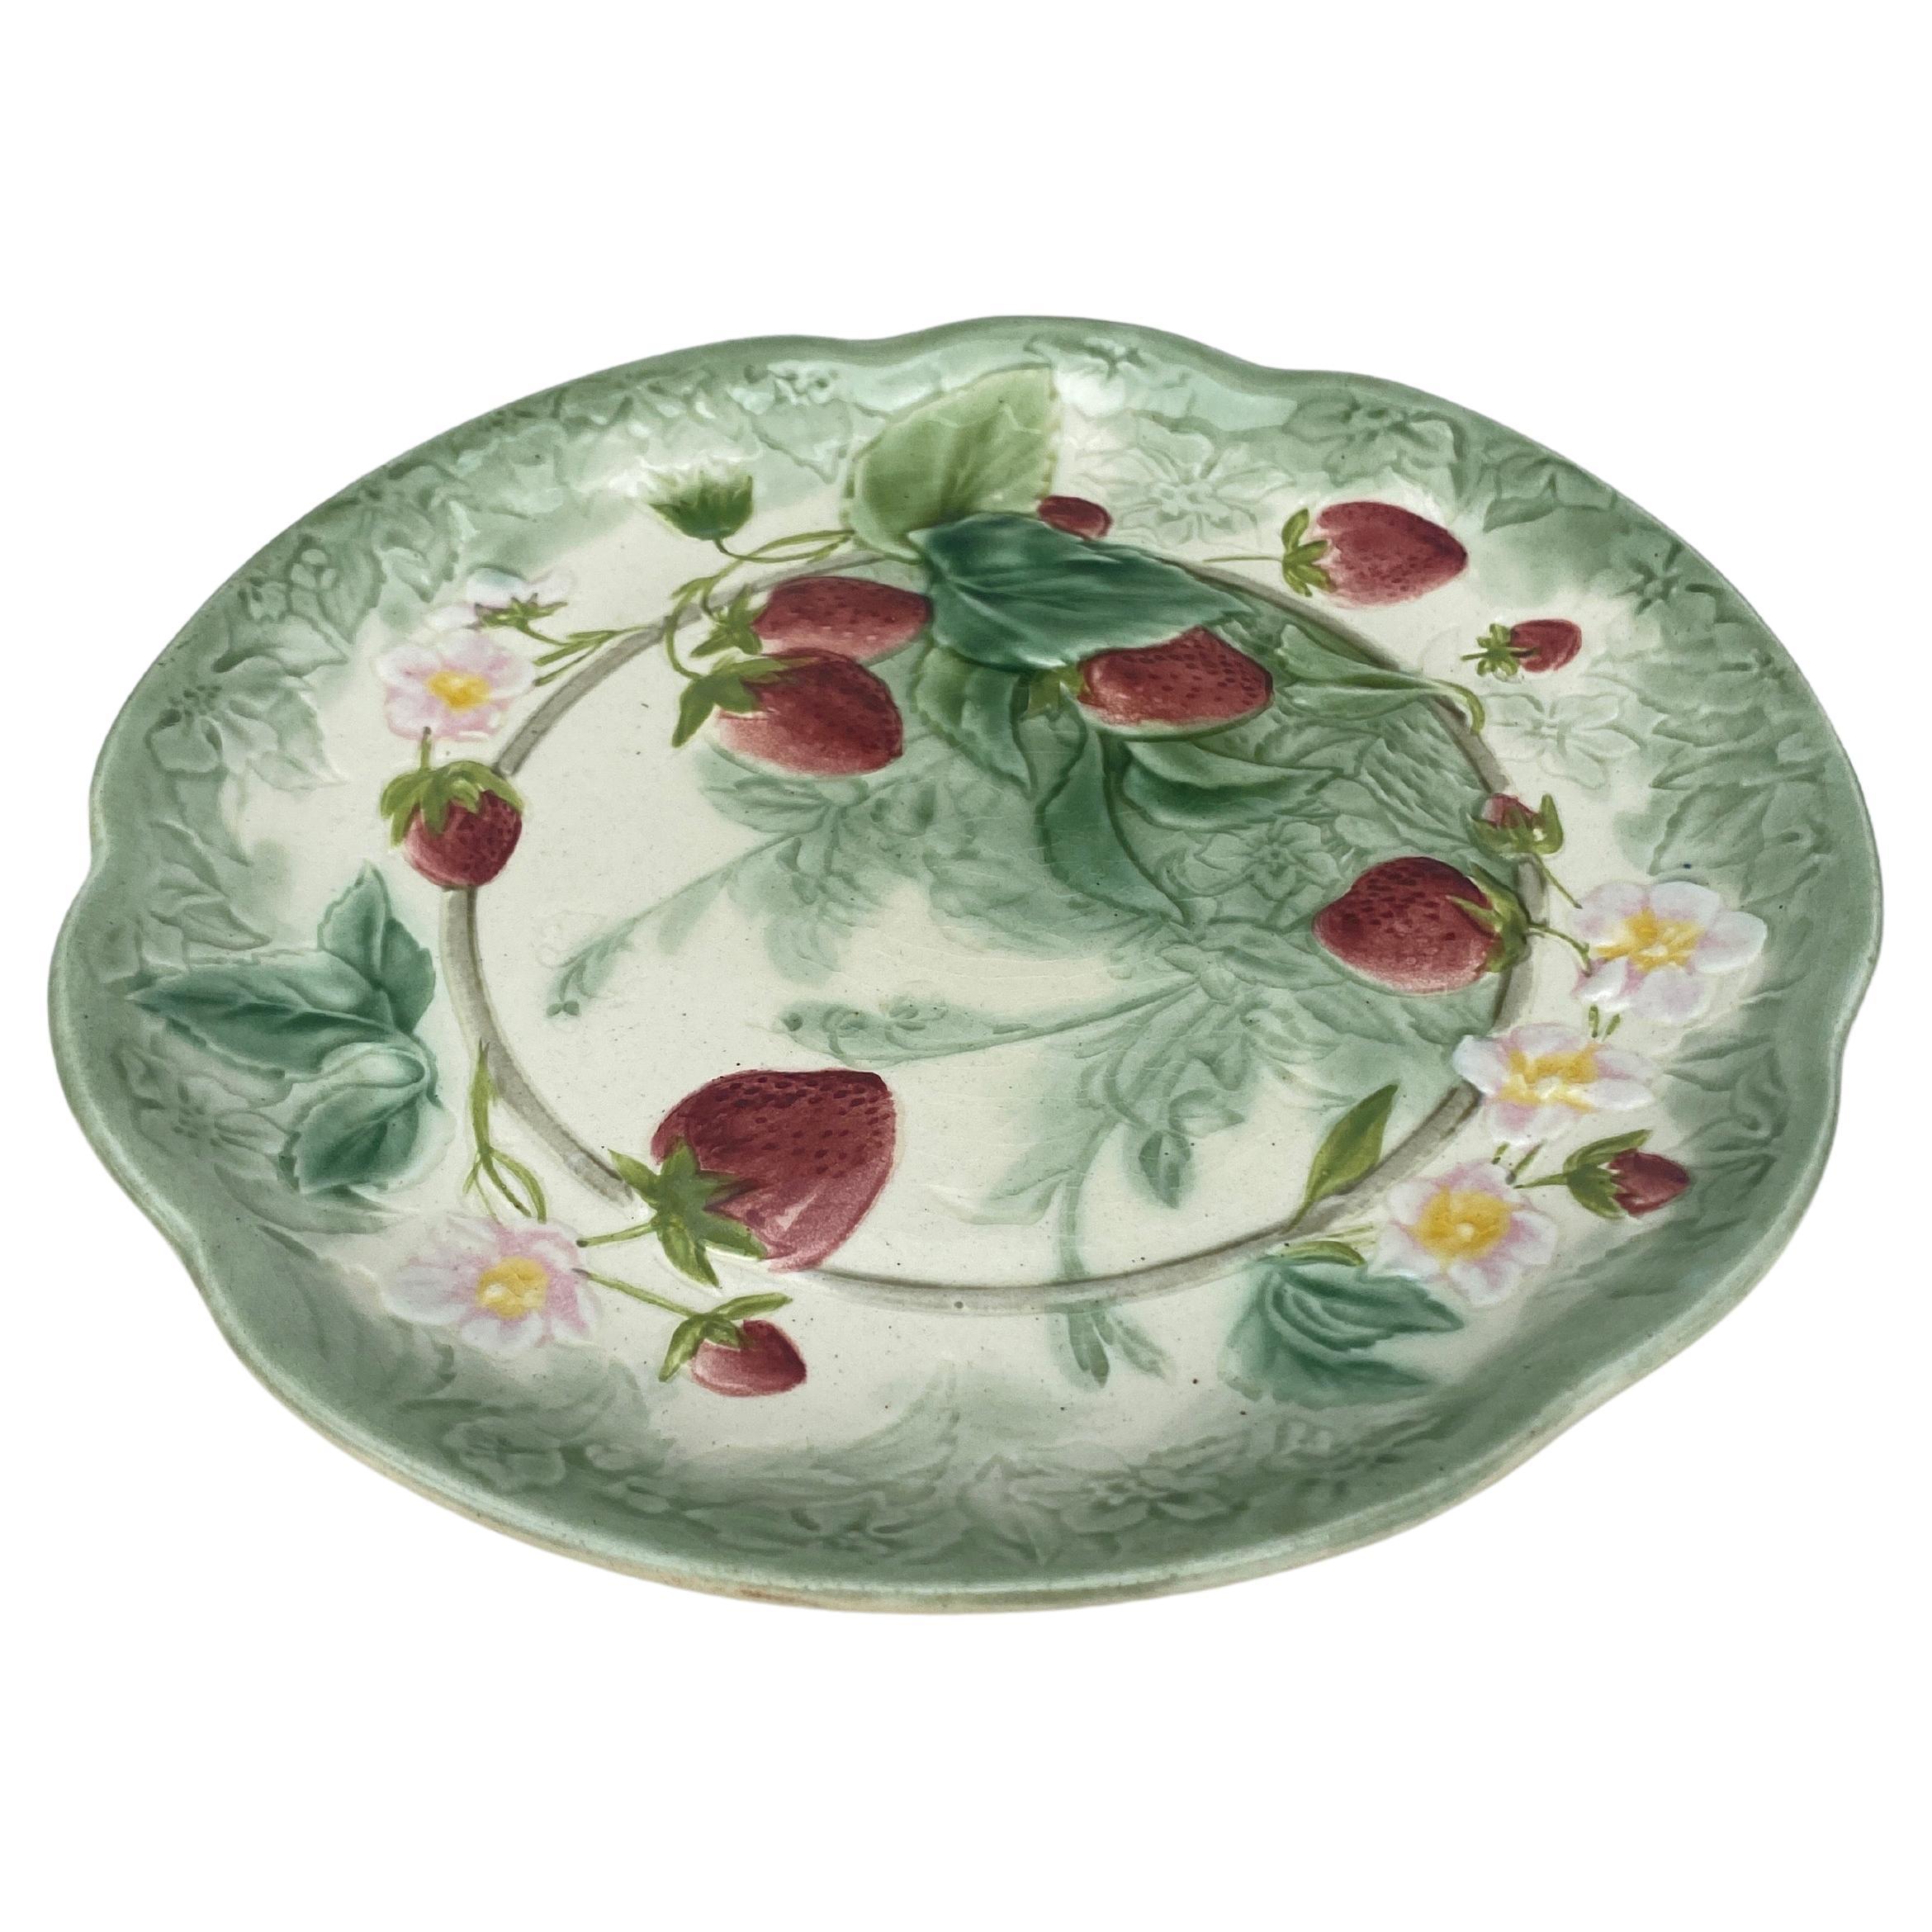 Assiette à fraises en majolique du XIXe siècle signée Choisy-le-Roi.
Réalisé pour Higgins & Setter New York.
The Higgins & Seiter Company de New York a commencé à vendre des décorations pour la table, notamment du verre richement taillé en 1887. En